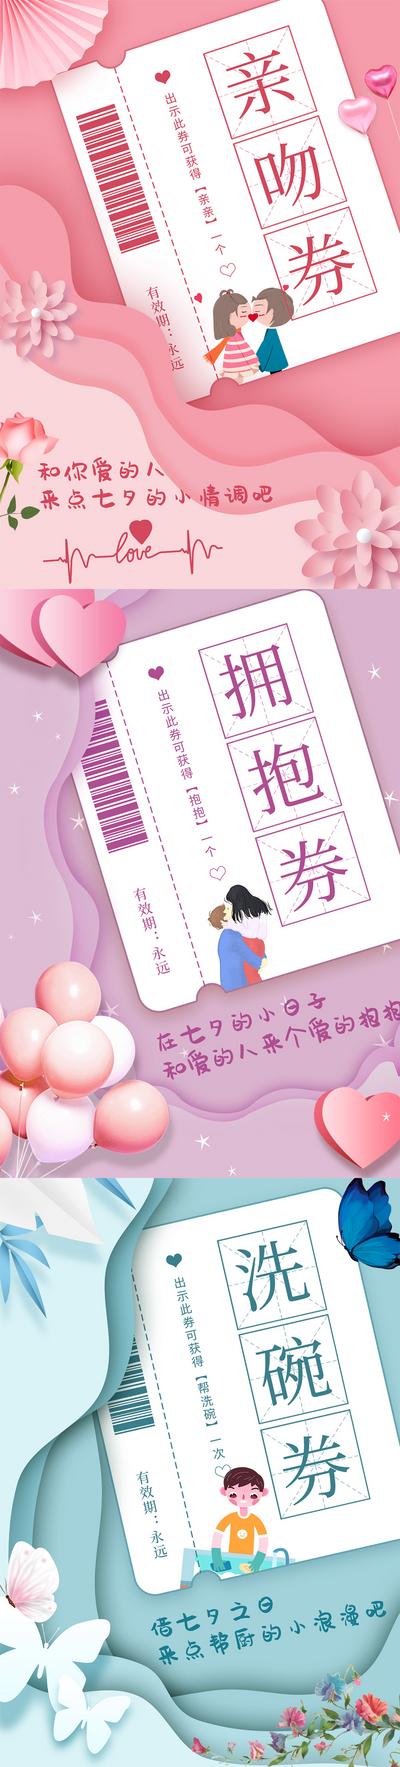 南门网 海报   中国传统节日 七夕 情人节 优惠券  